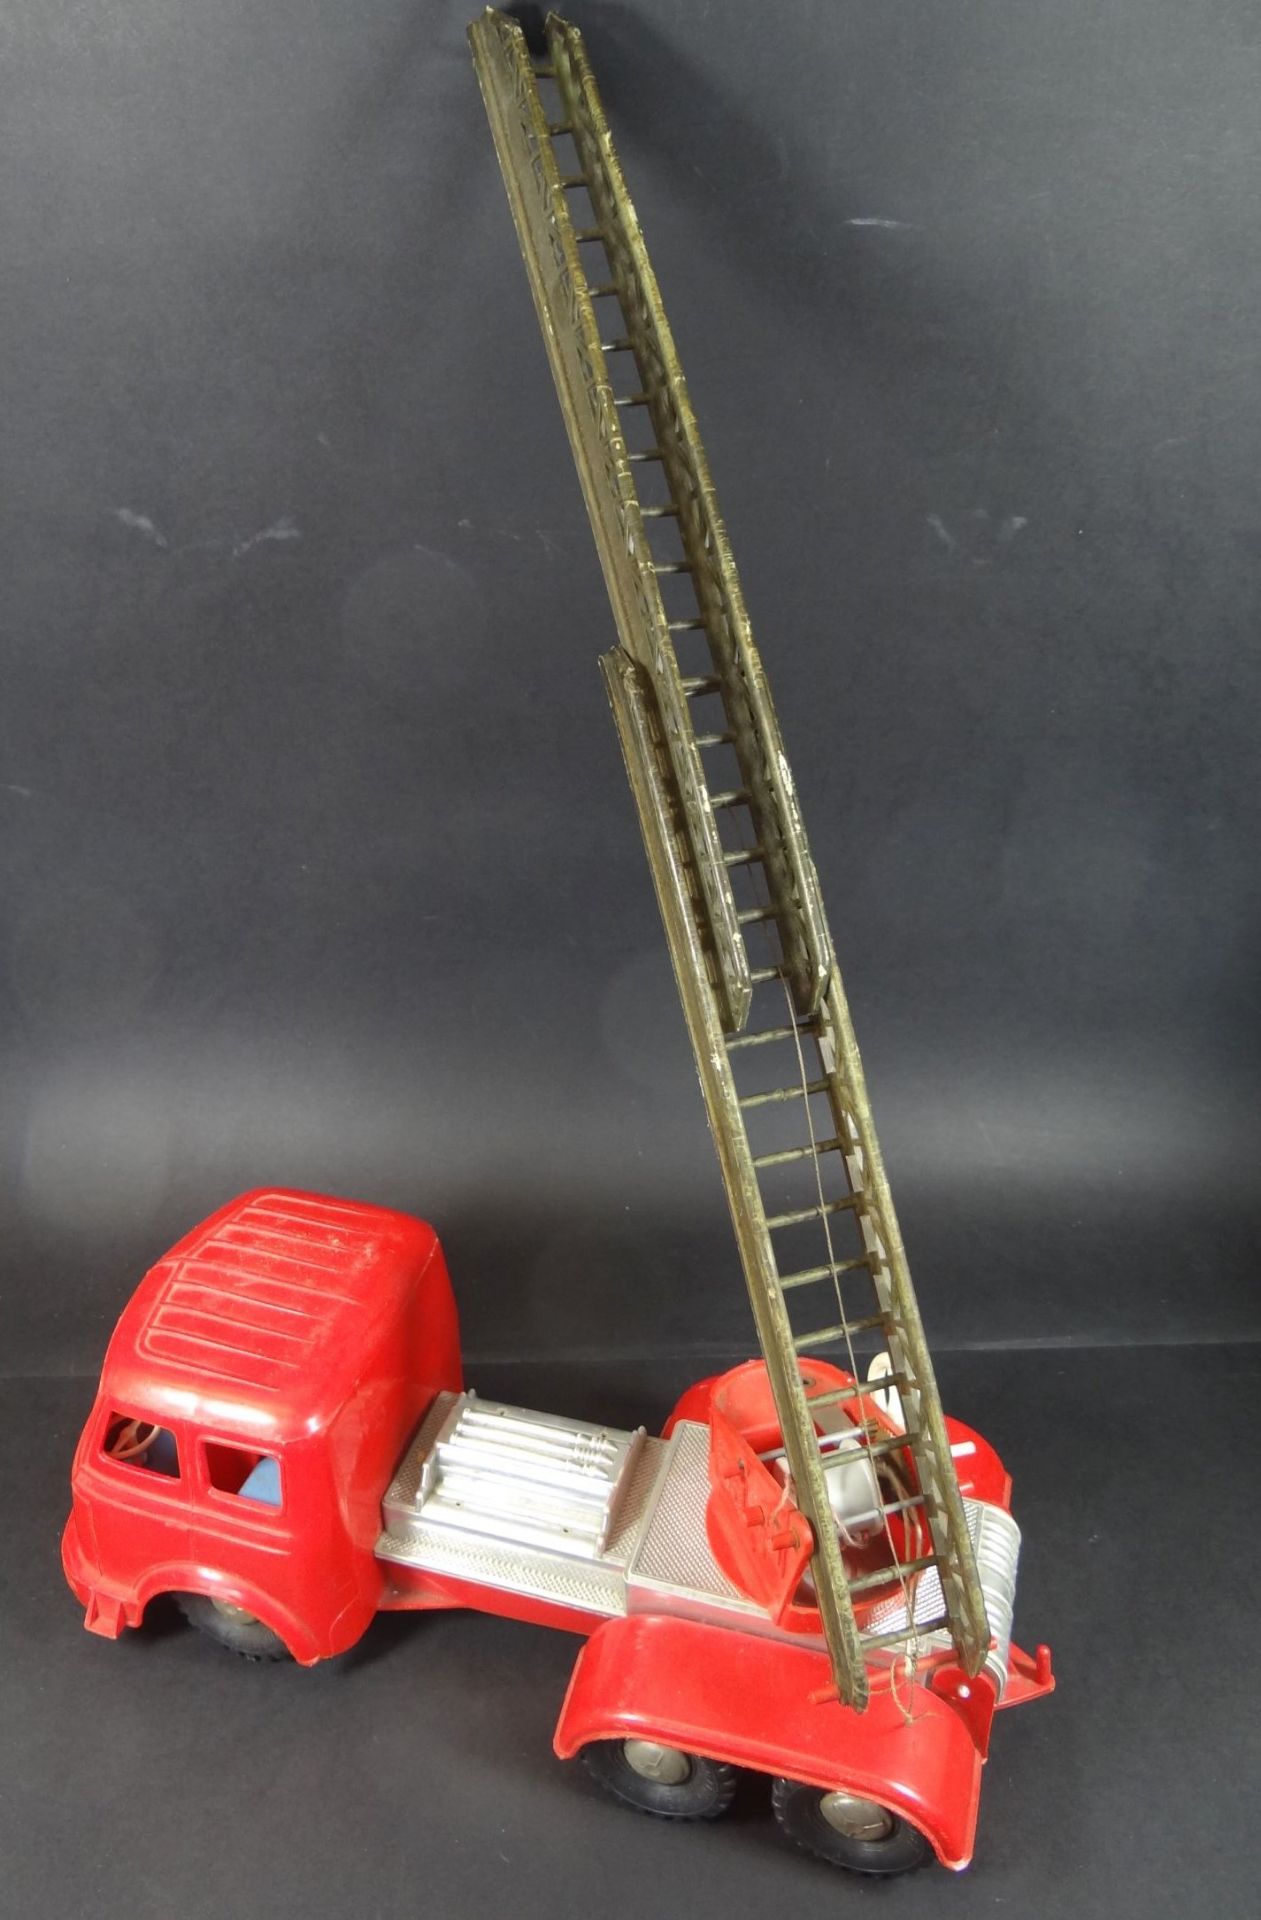 gr. Feuerwehr-Leiterwagen, Kunststoff, H-14 cm, L-30 cm - Bild 5 aus 6